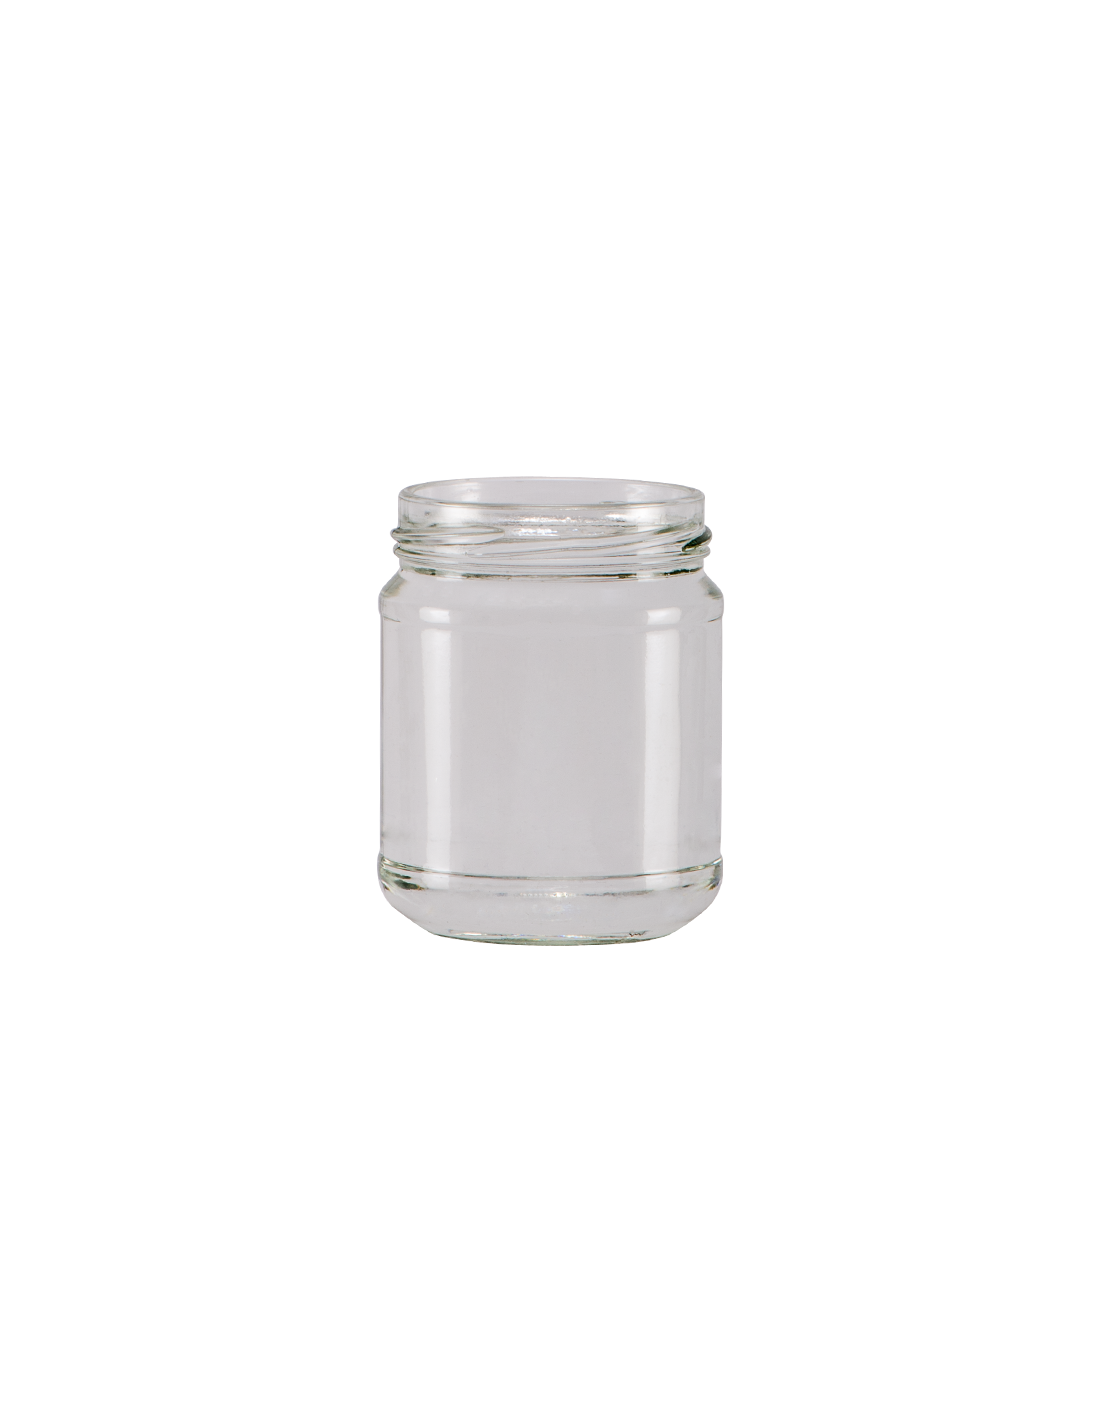 Vaso in vetro gr 250 (212 ml - confezione da 28 pezzi) con capsula